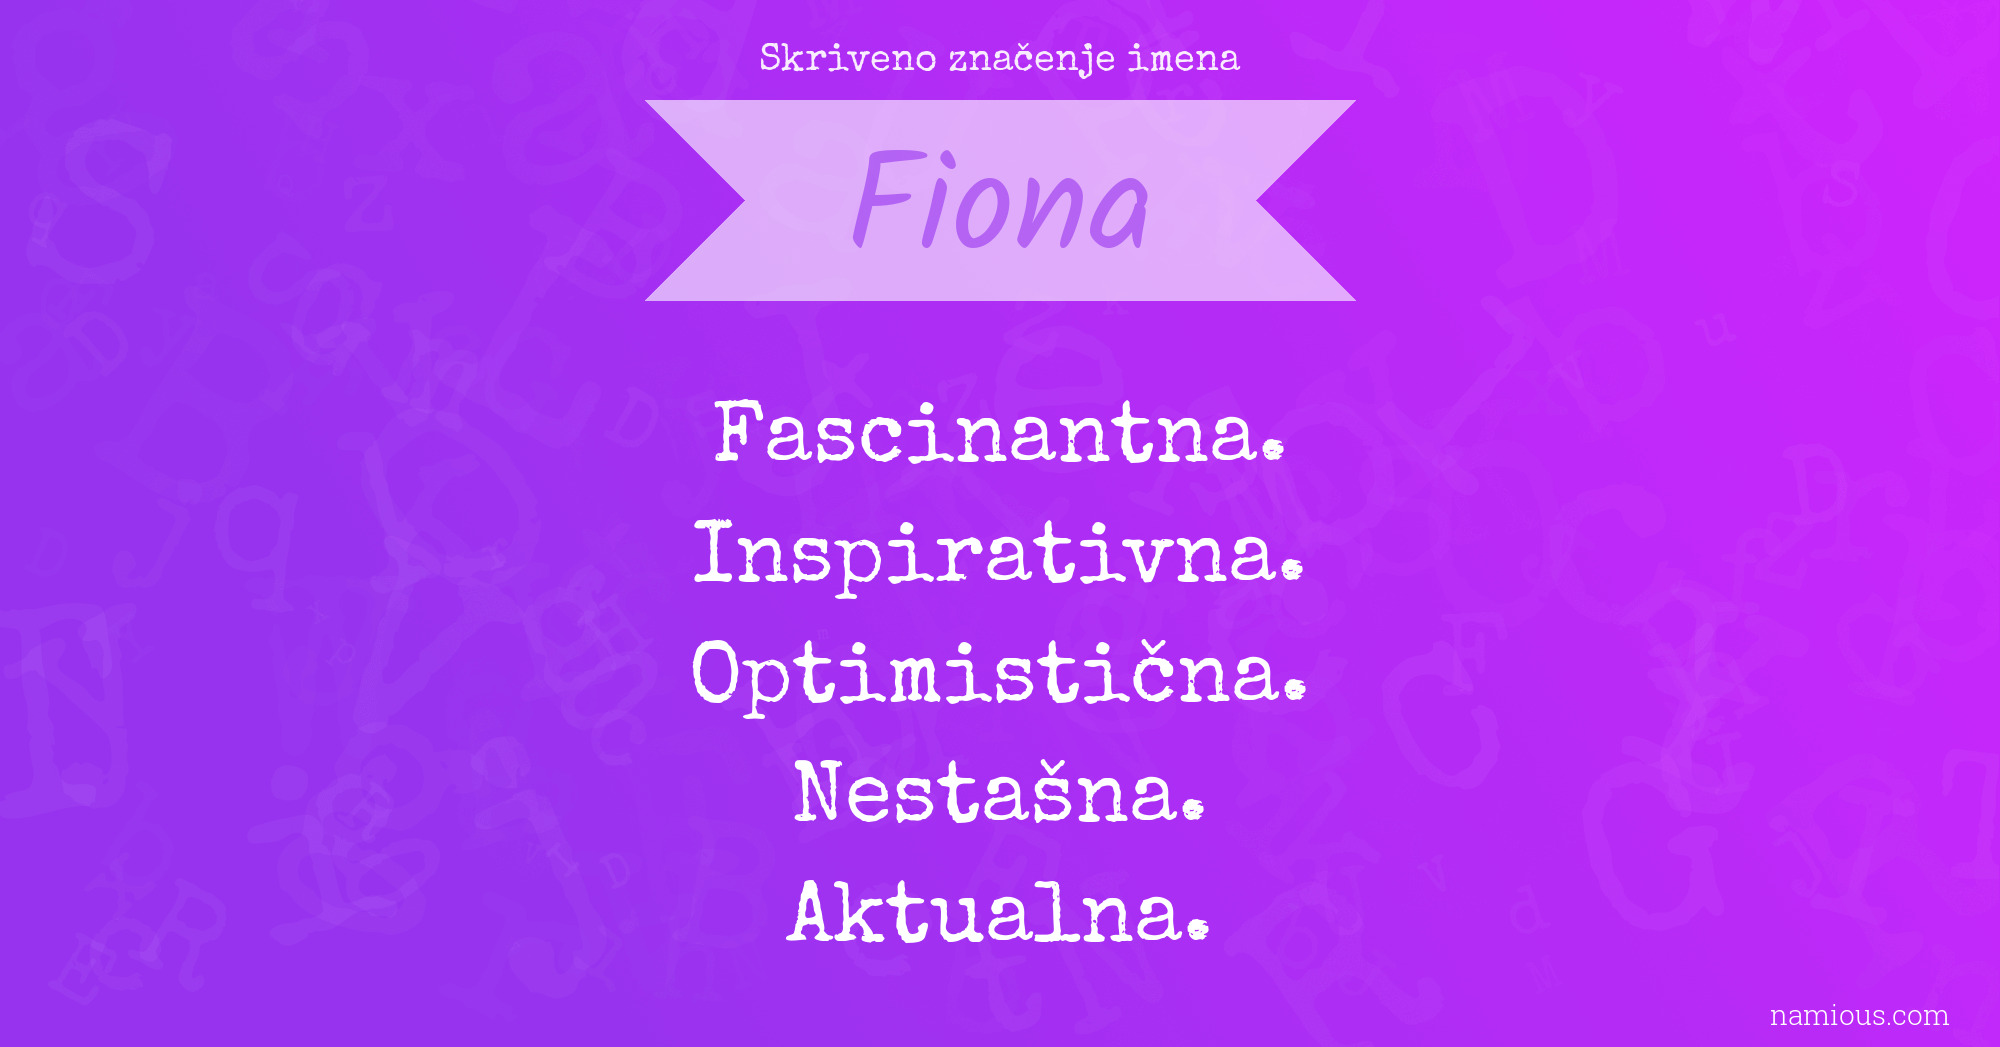 Skriveno značenje imena Fiona